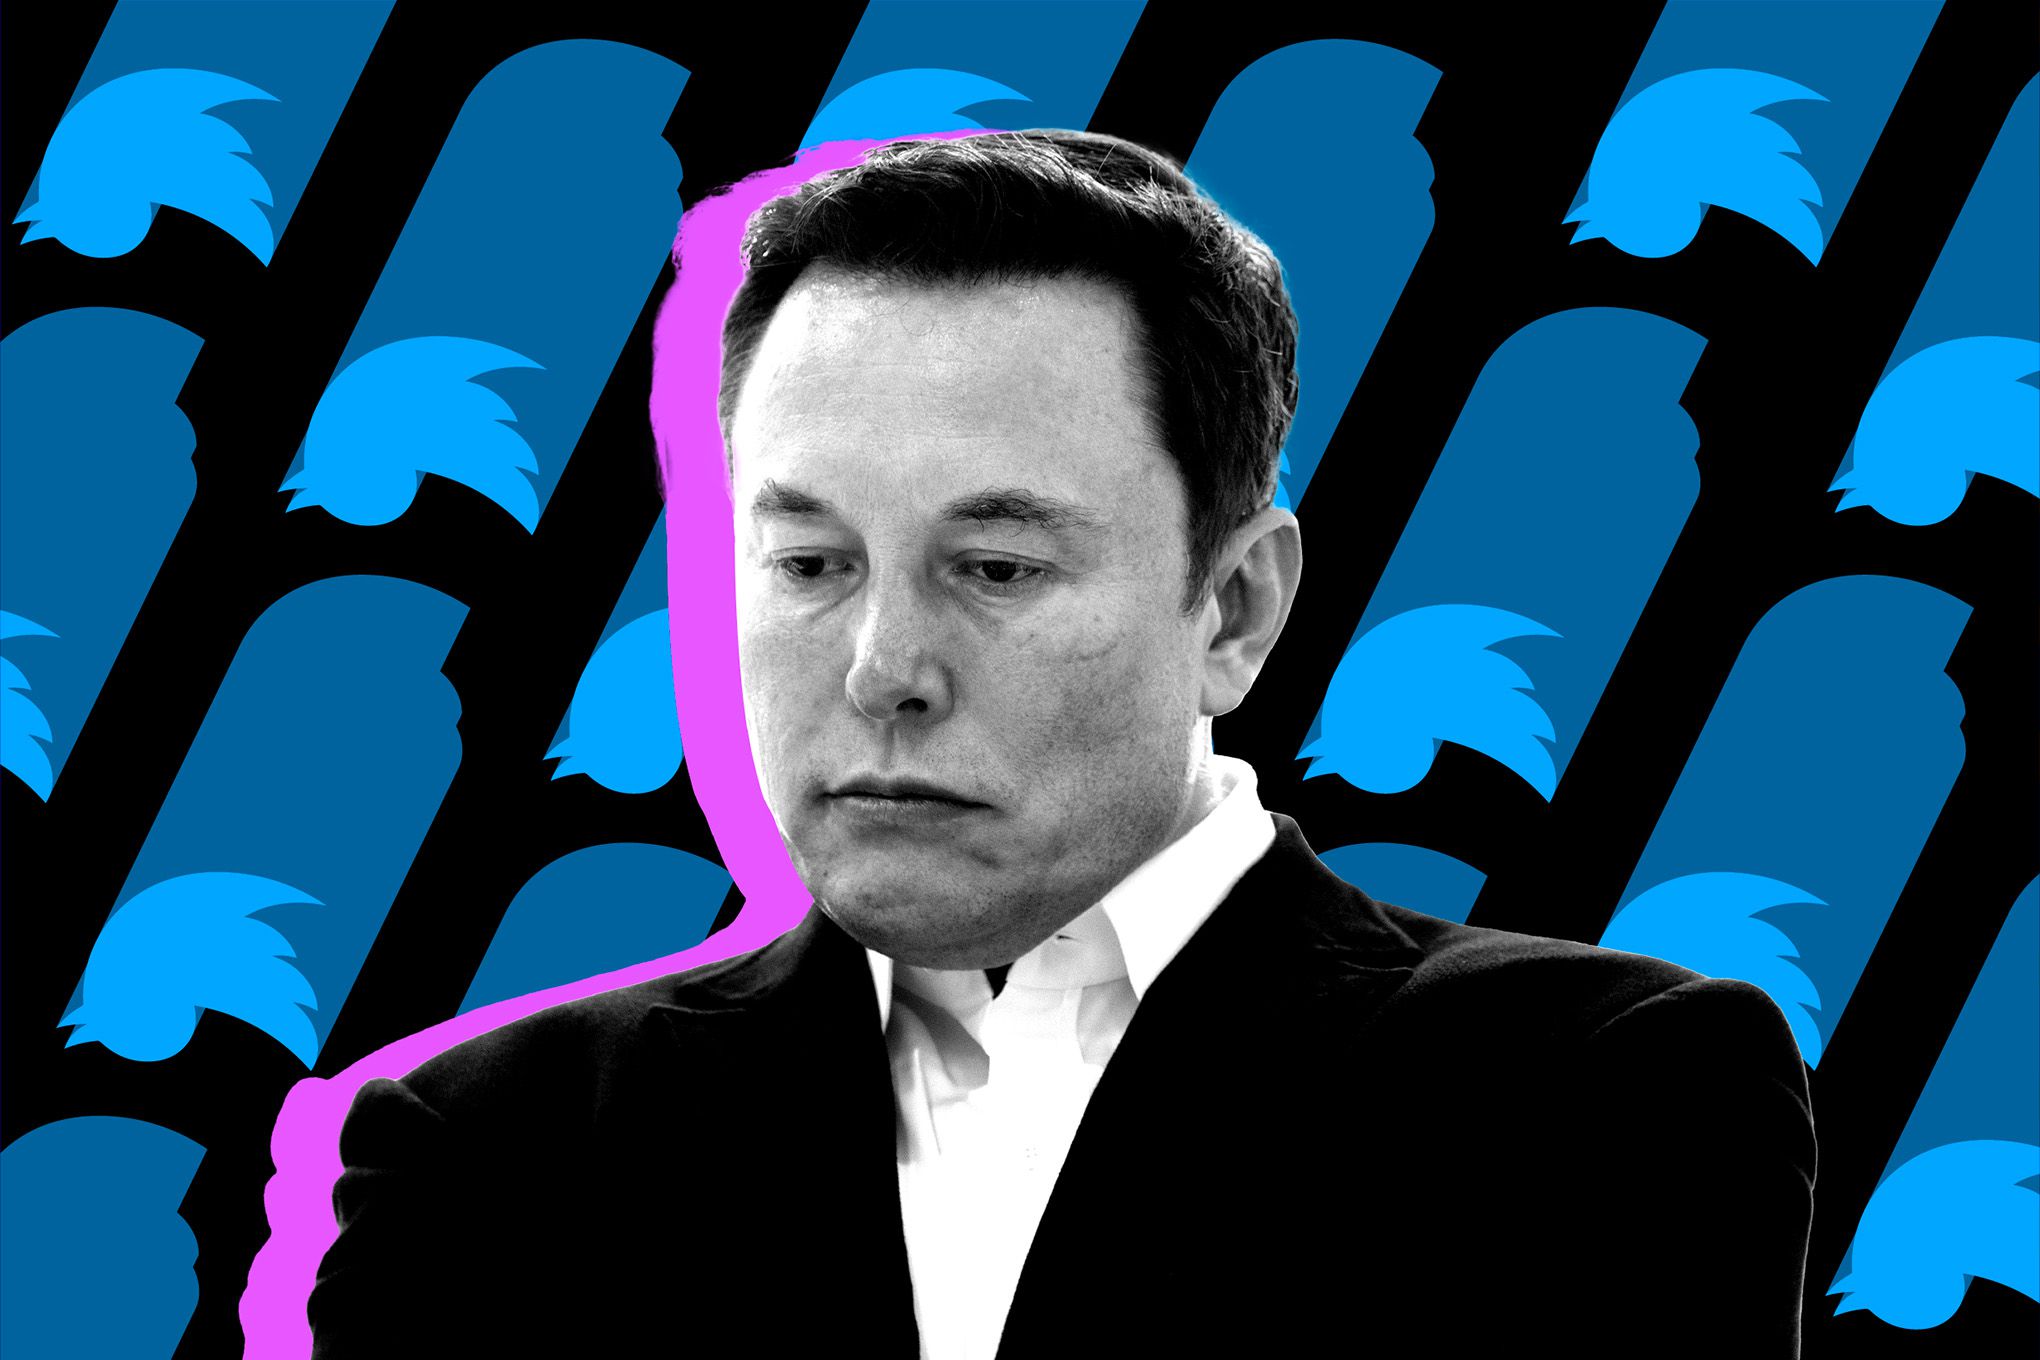 Twitter benotzt Vote fir den Elon Musk ze entloossen